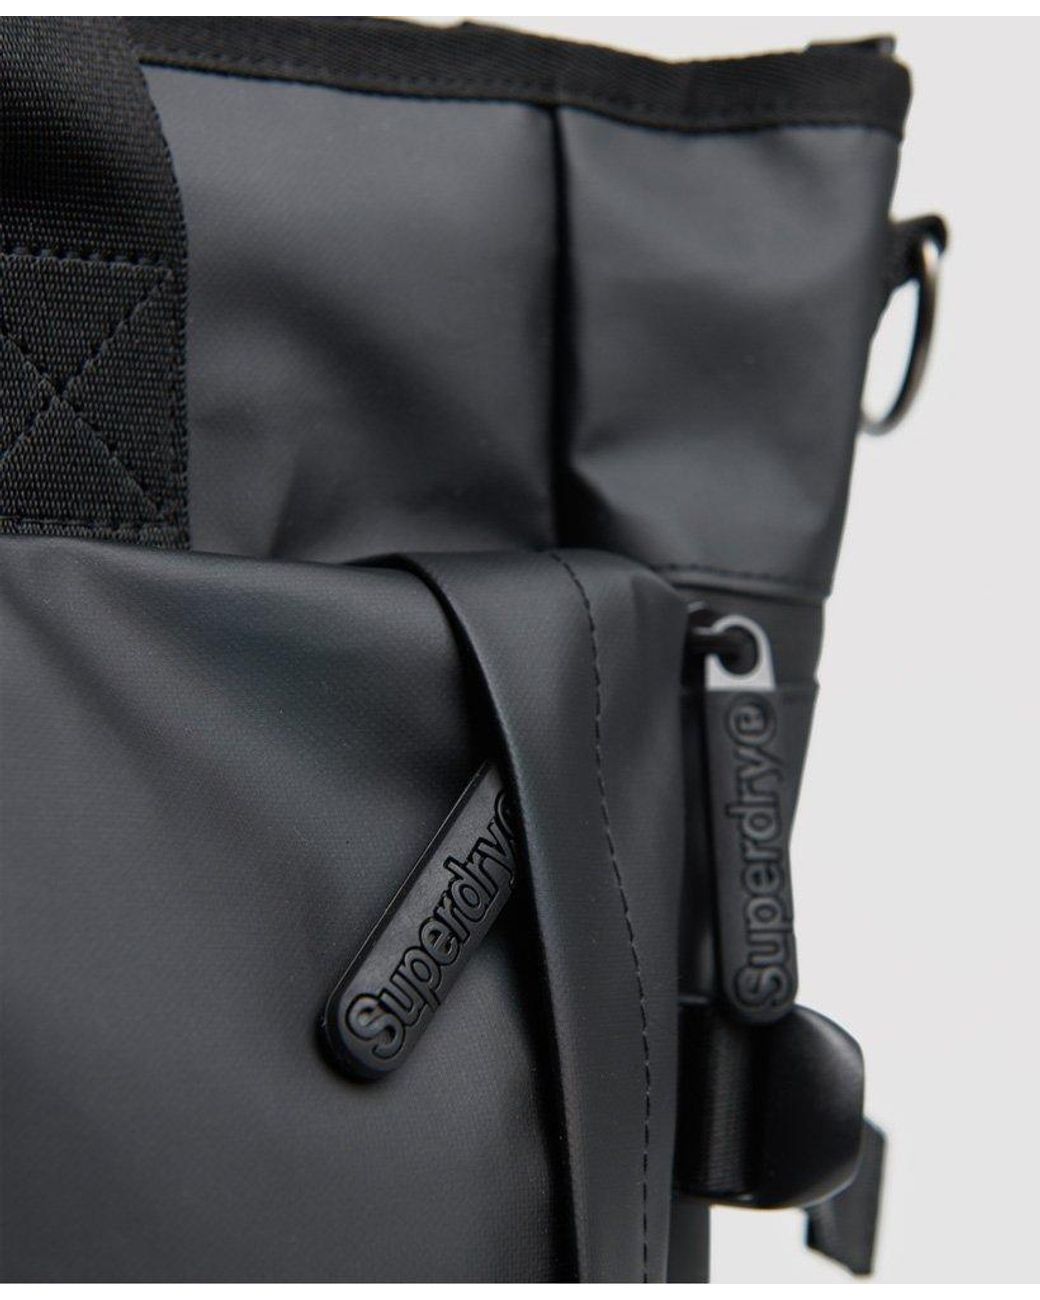 Superdry Commuter Tarp Tote Bag Black for Men | Lyst